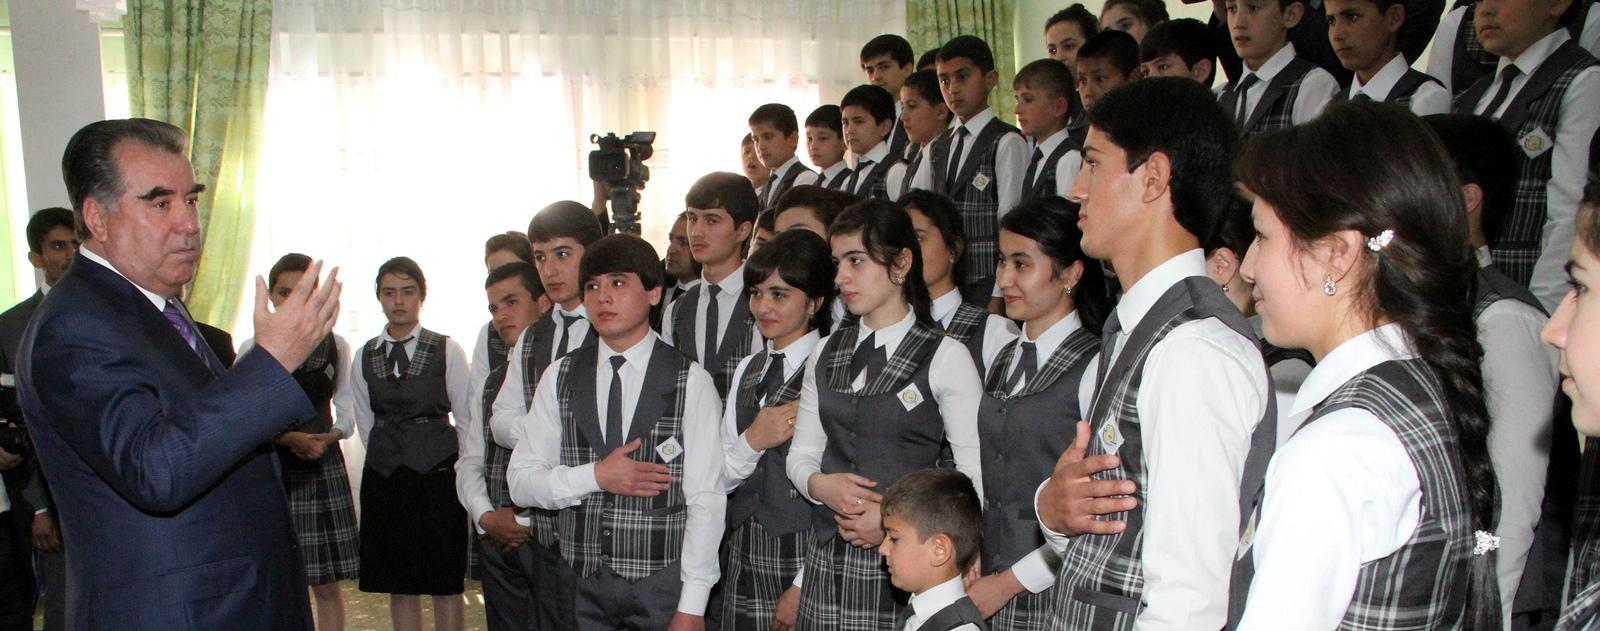 Таджикистан: как развивать поликультурное высшее образование в этнокультурном обществе?